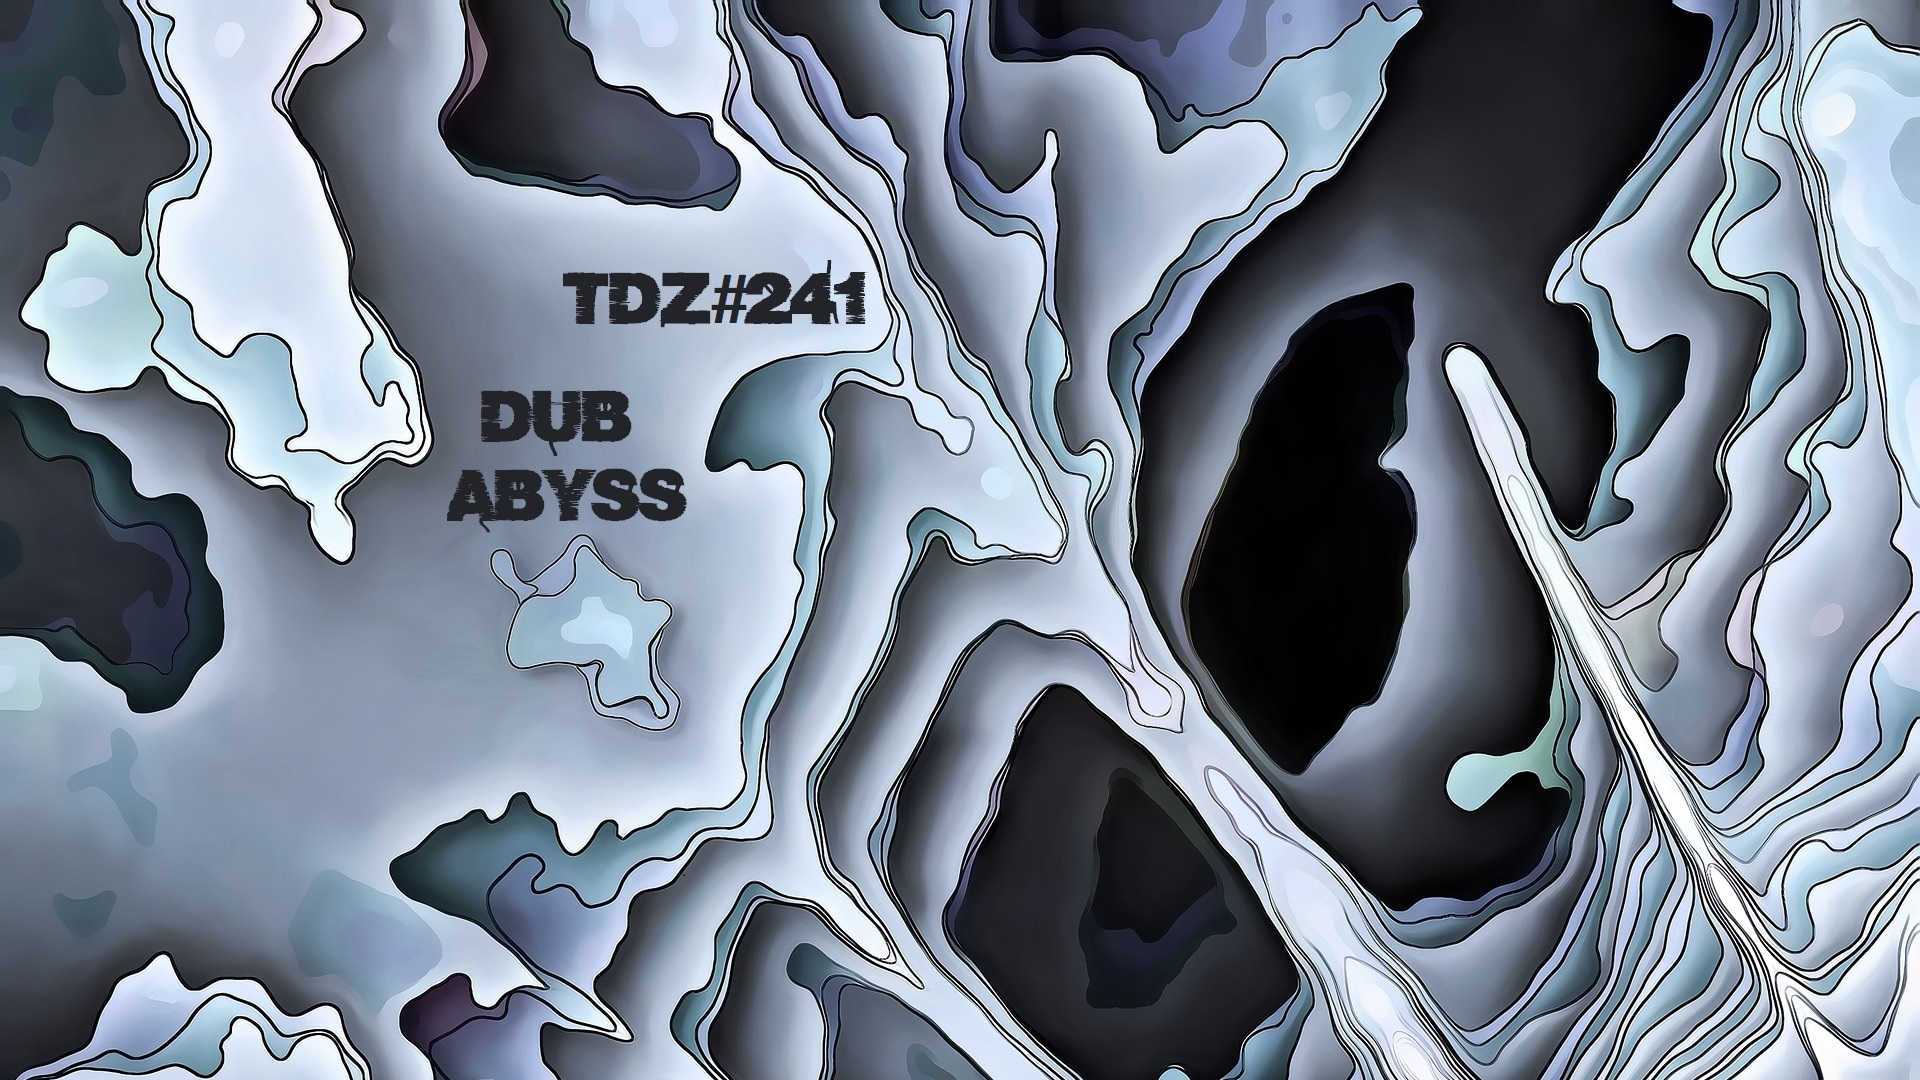 TDZ#241... Dub Abyss.....